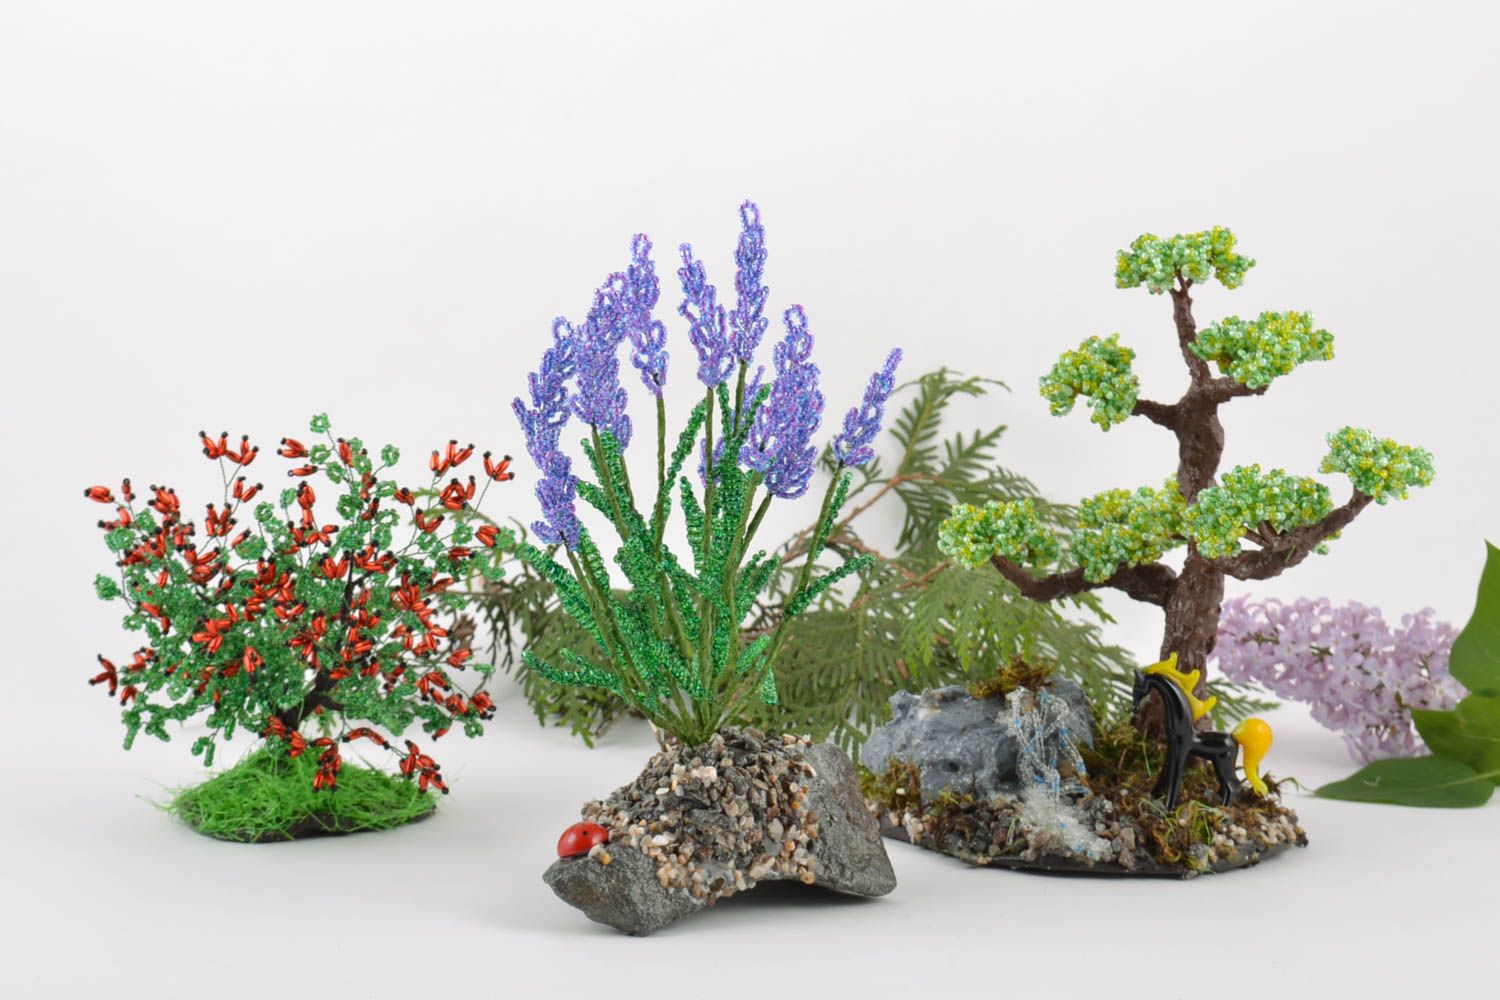 Цветы кустик и дерево из бисера набор из 3 изделий ручной работы для декора дома фото 1